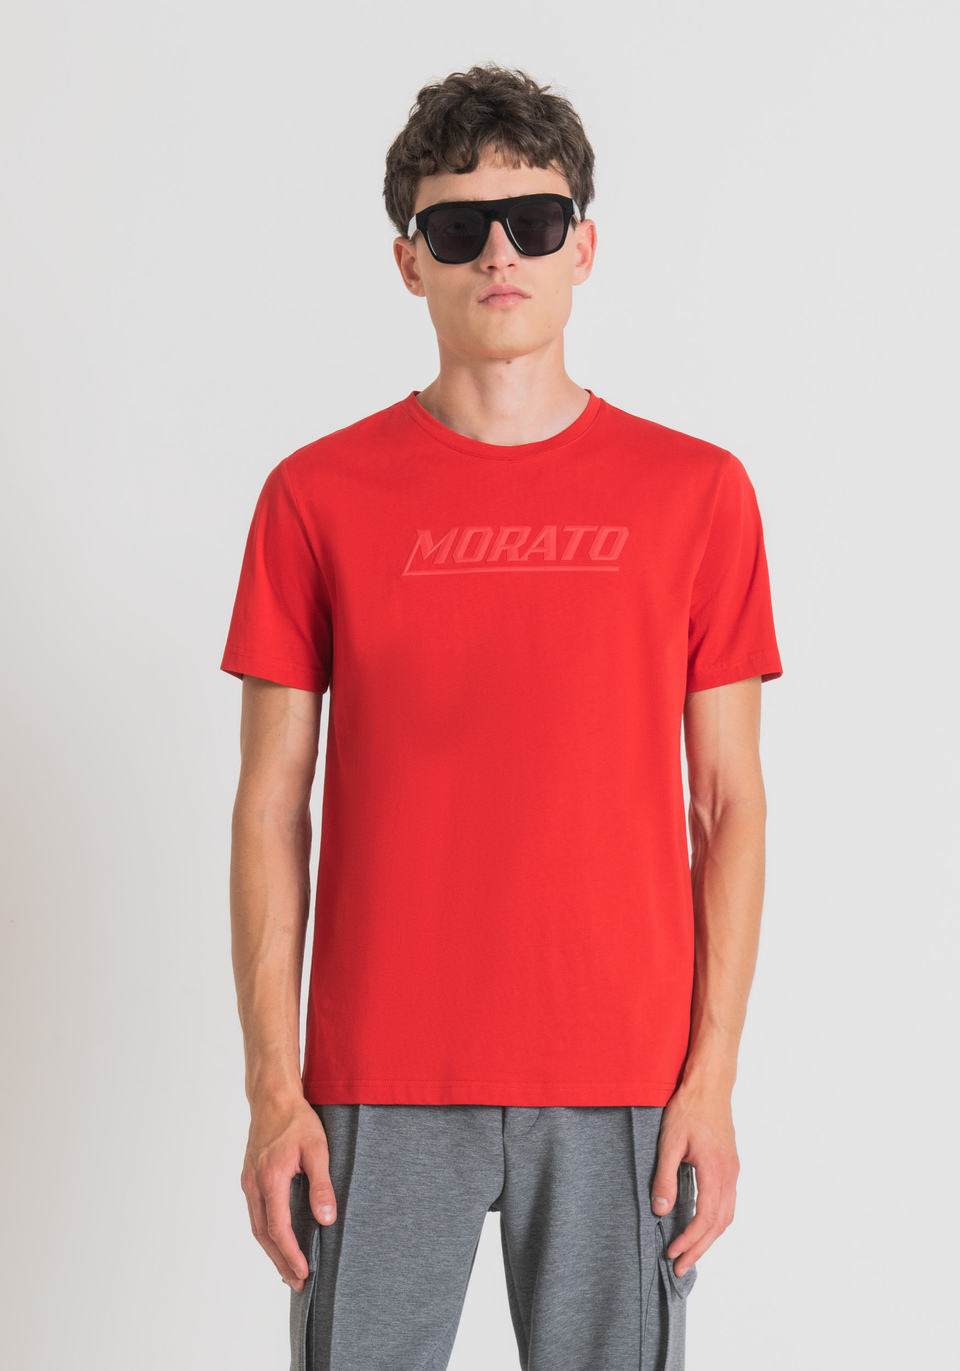 T-SHIRT SLIM FIT IN PURO COTONE CON STAMPA “MORATO” - Antony Morato Online Shop